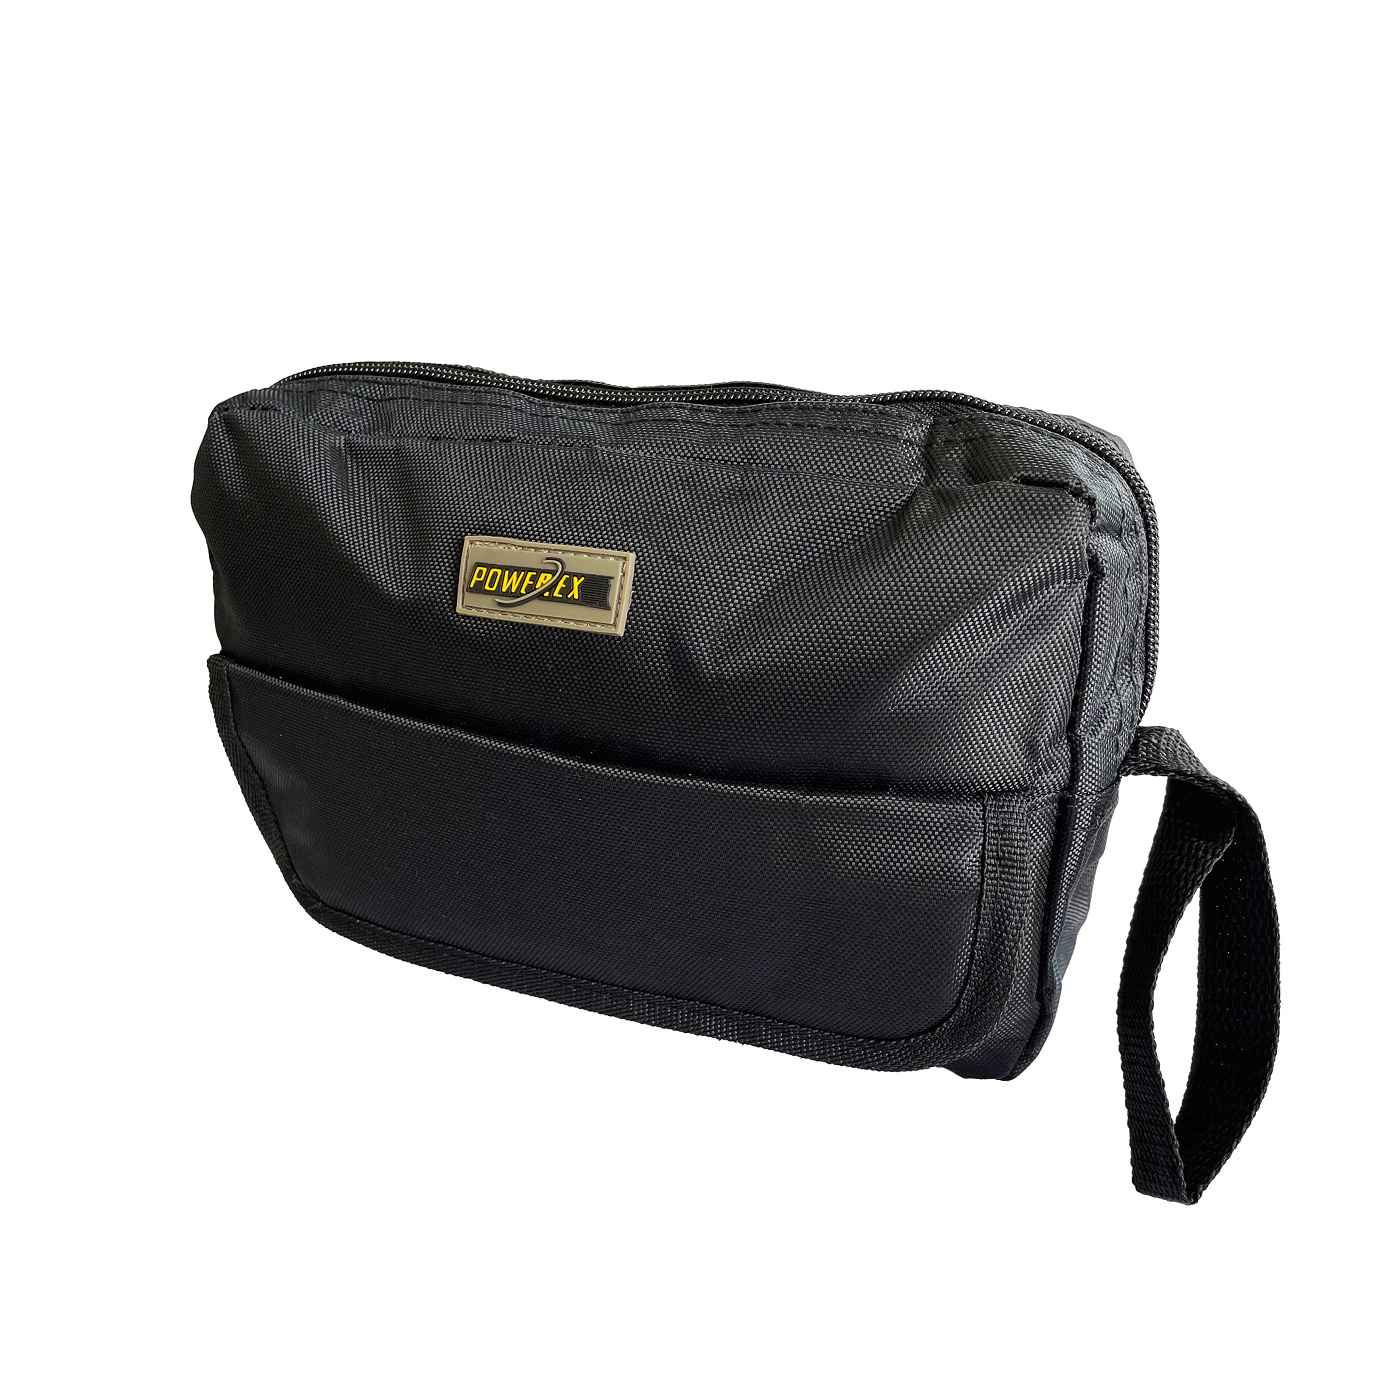 Powerex - Carry Bag